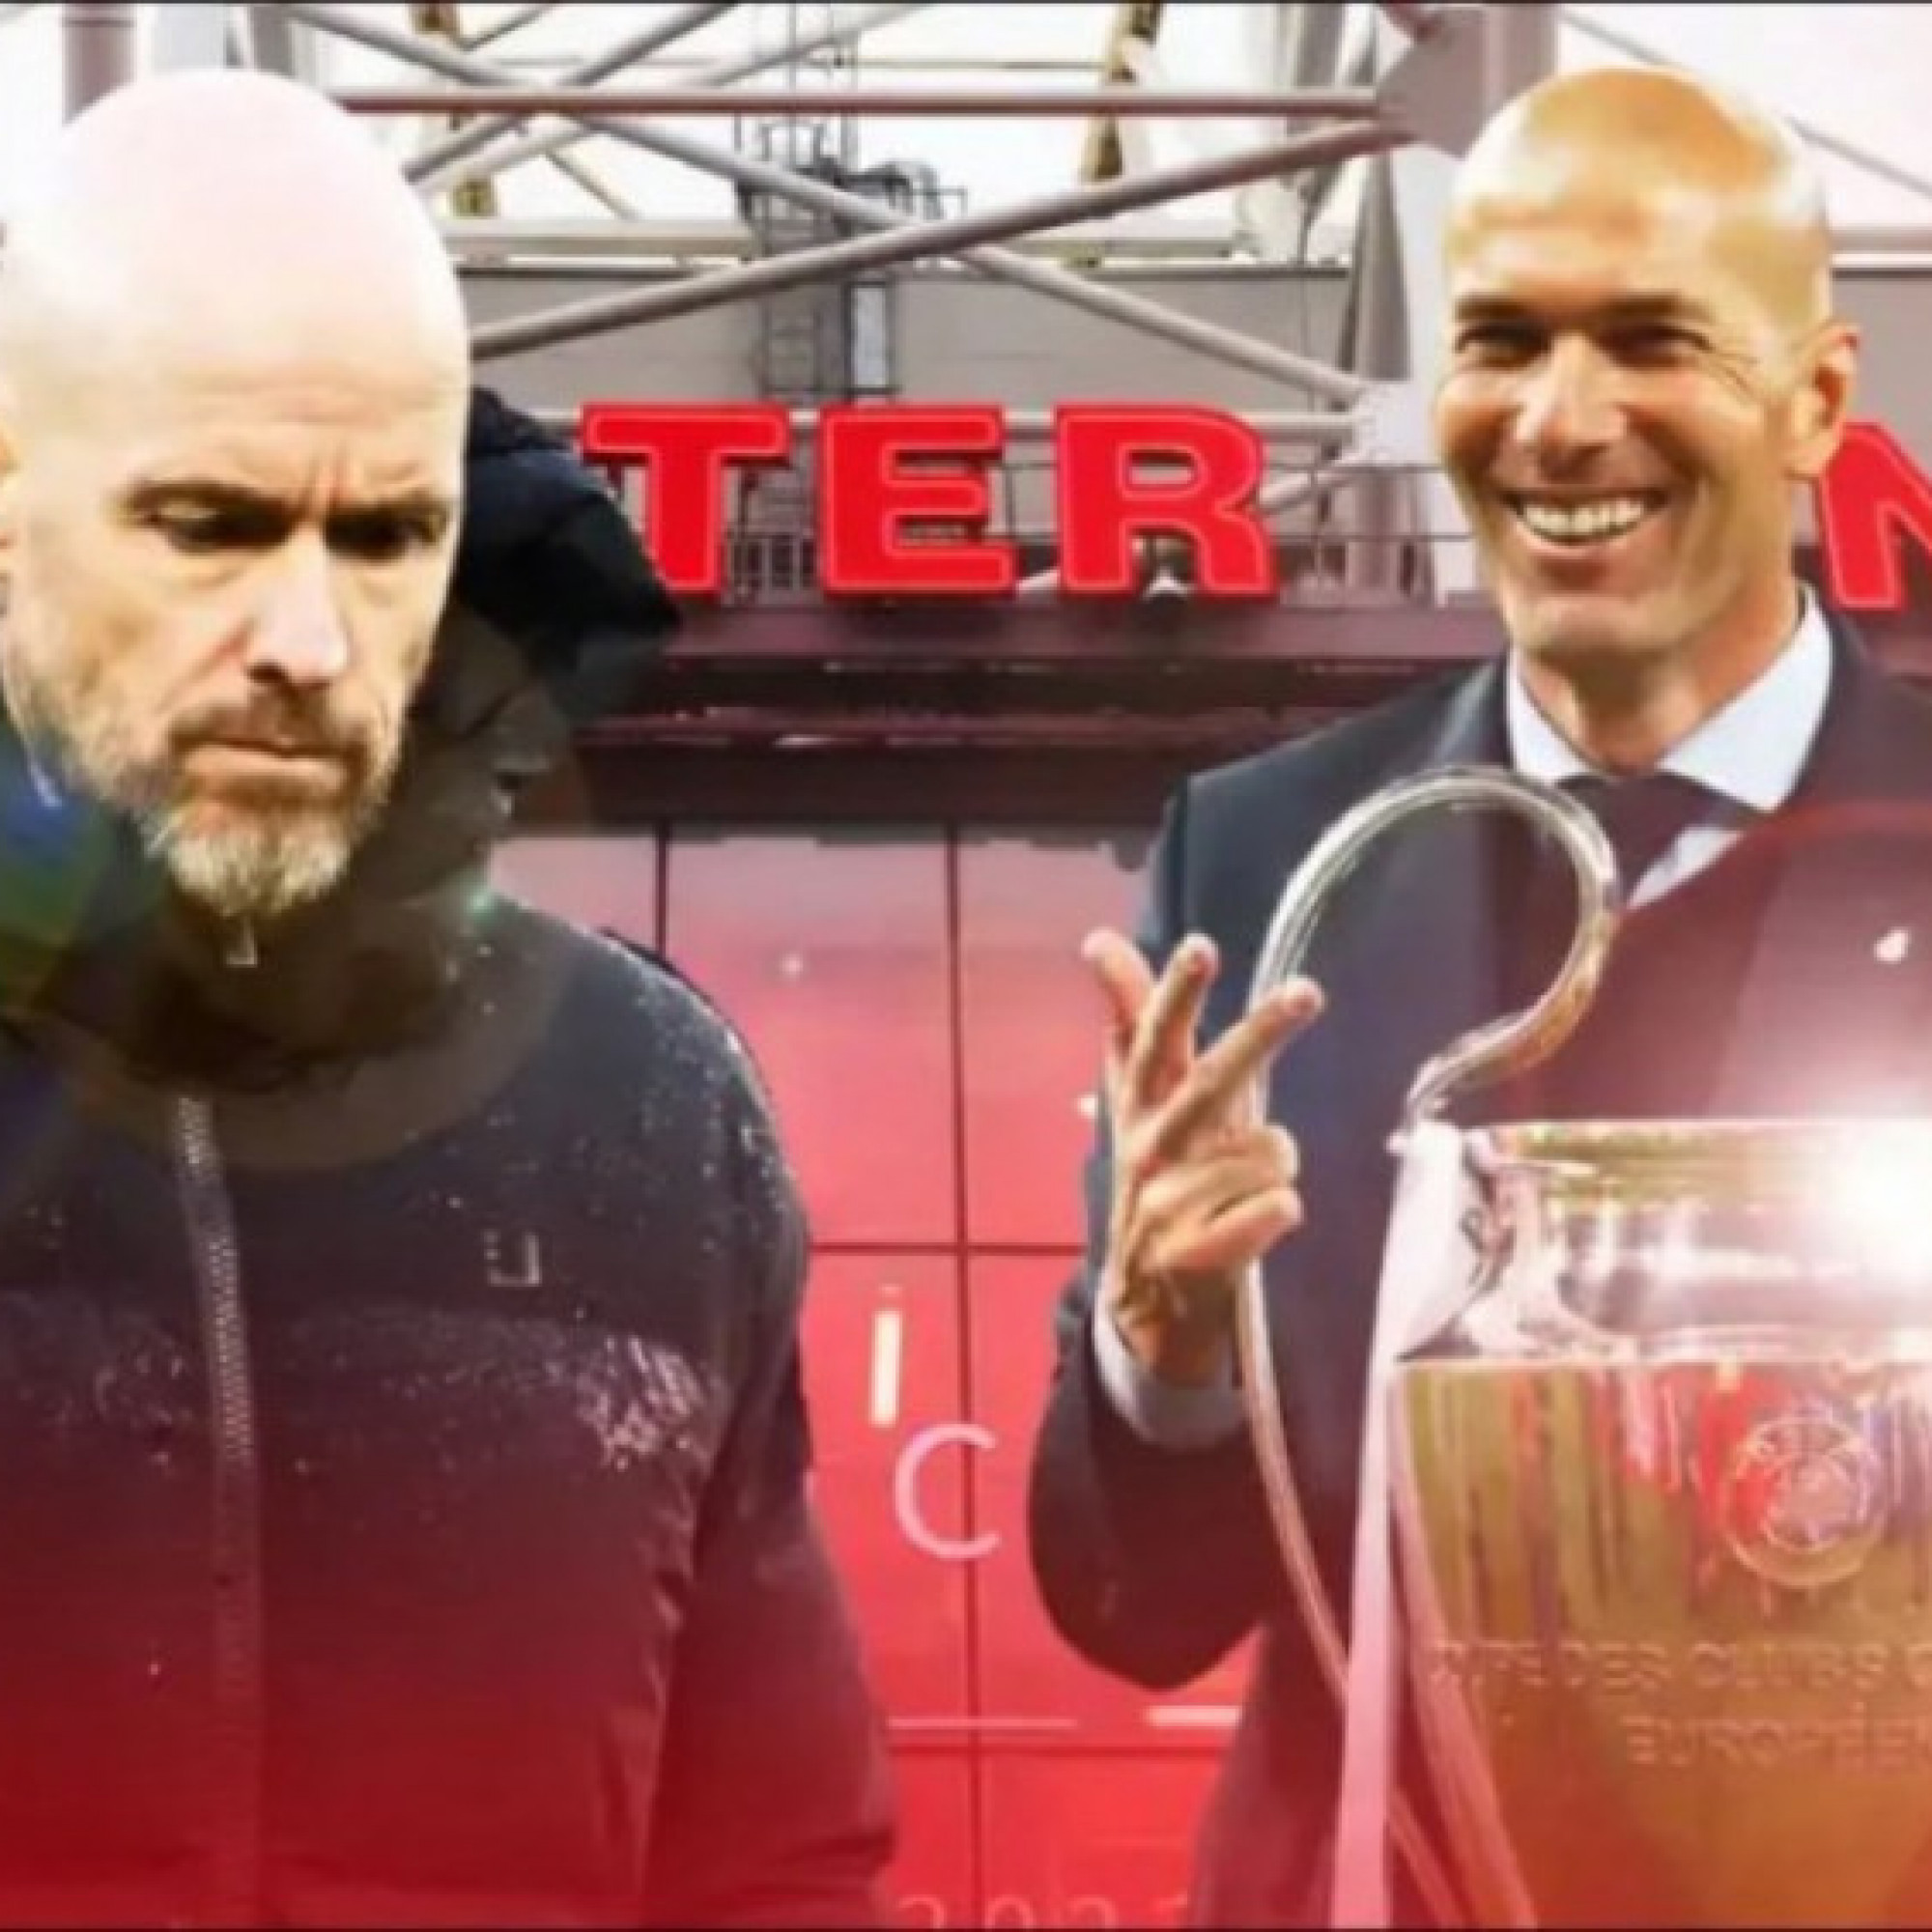  - MU lo "ngã đau" như Liverpool - Arsenal - Man City, đại gia chờ Zidane chốt tương lai (Clip 1 phút Bóng đá 24H)